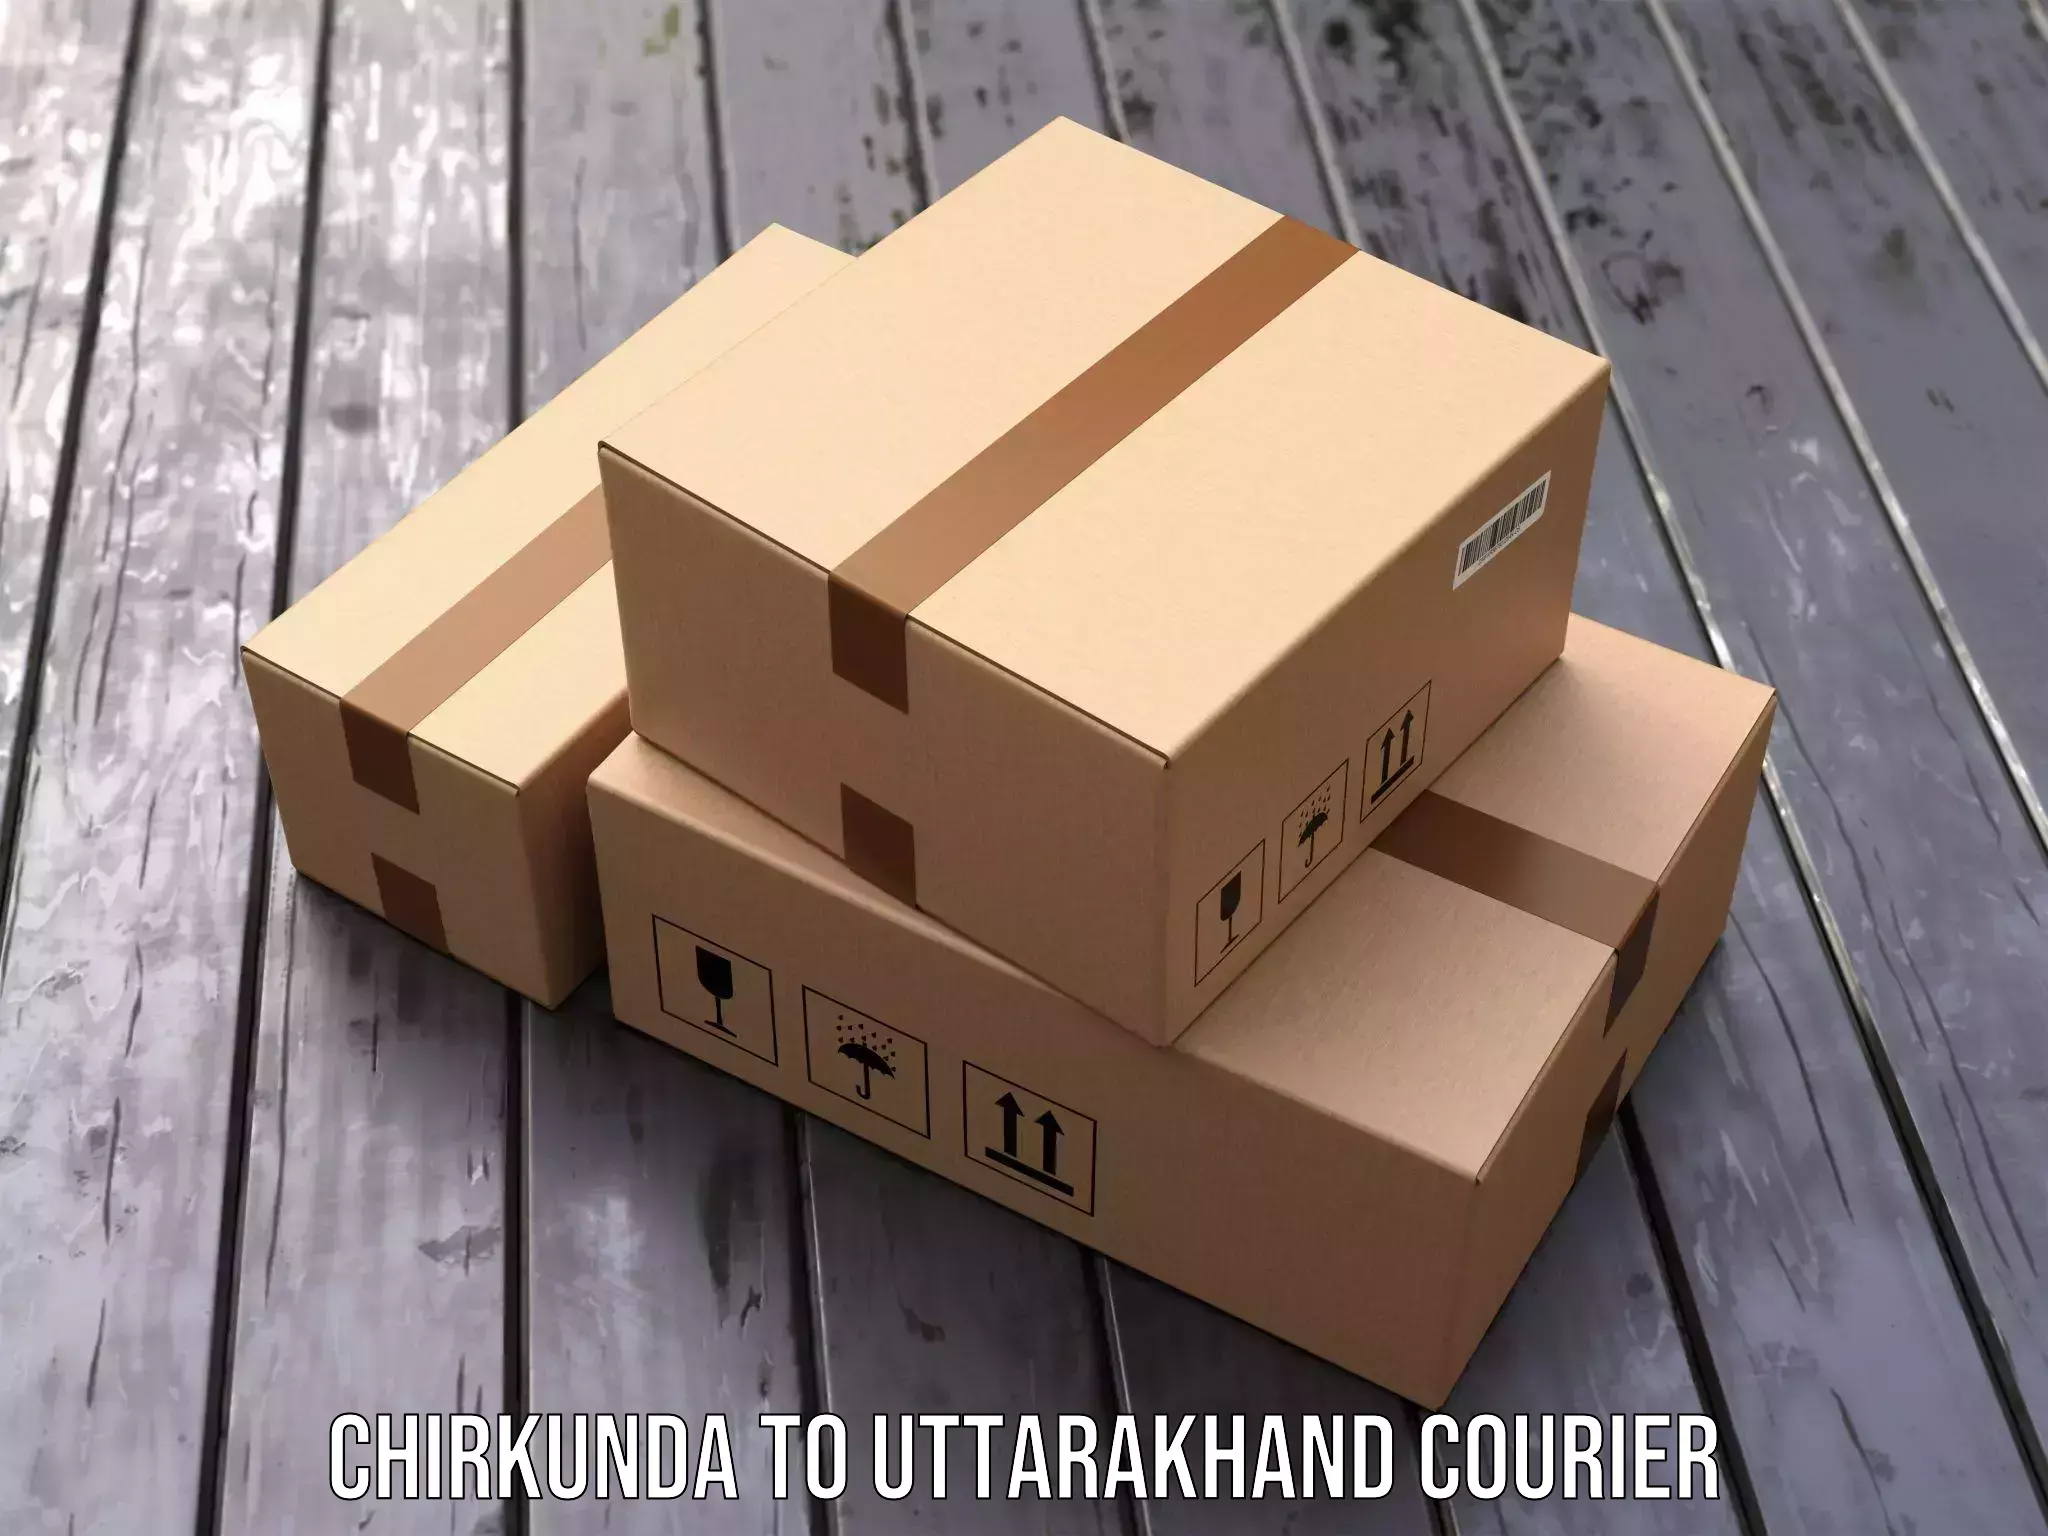 Multi-national courier services Chirkunda to Kotdwara